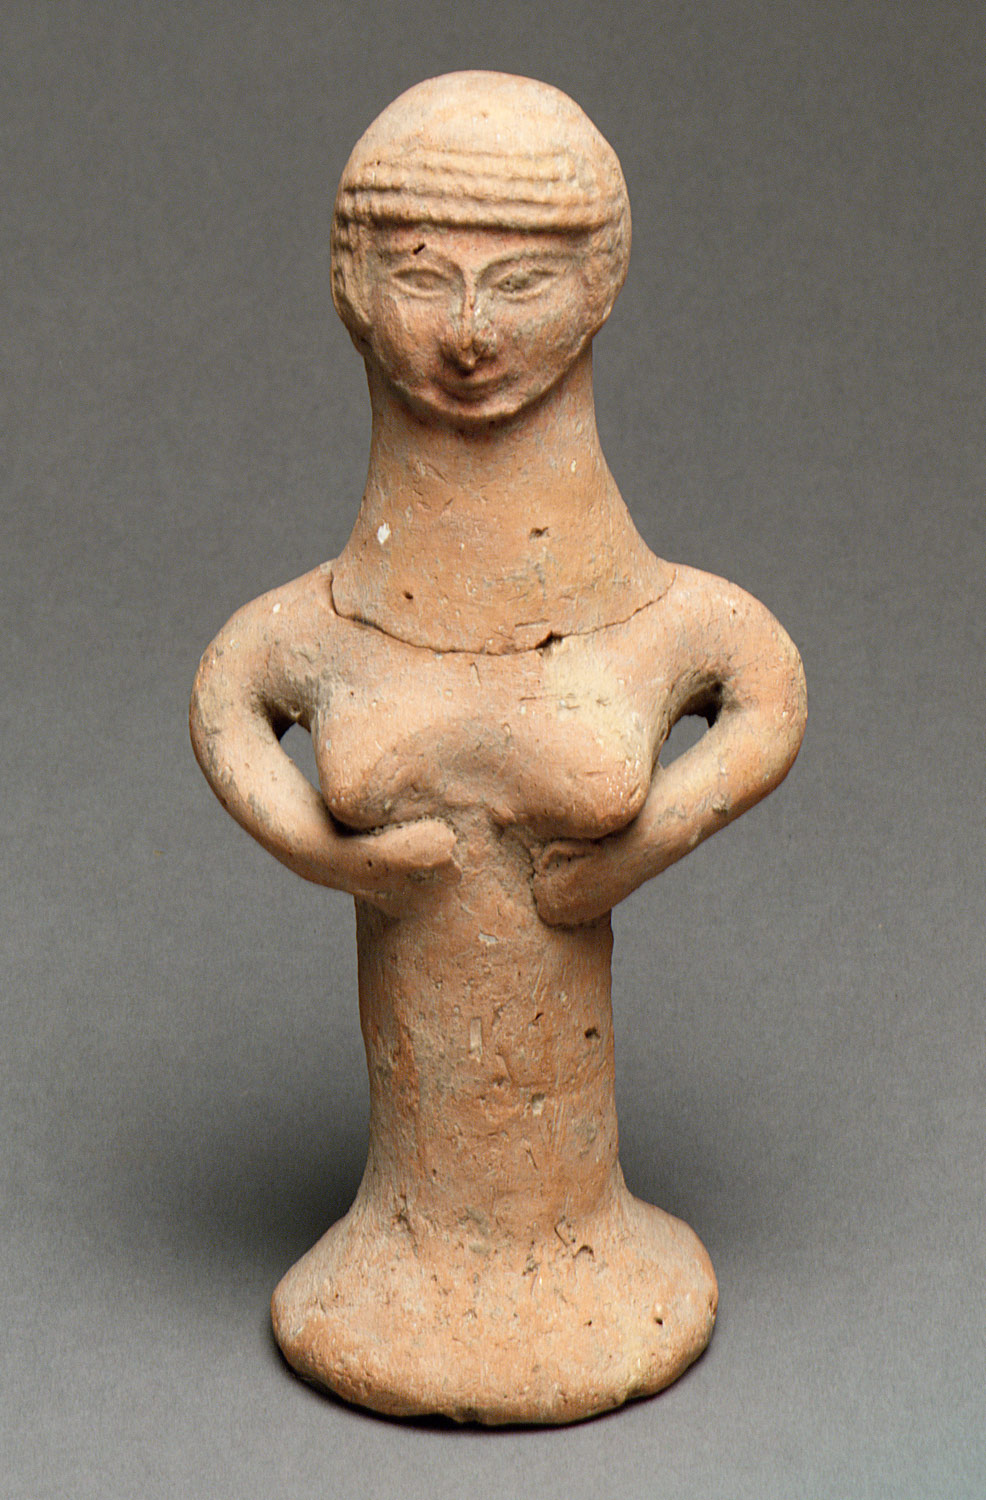 Nude female figure